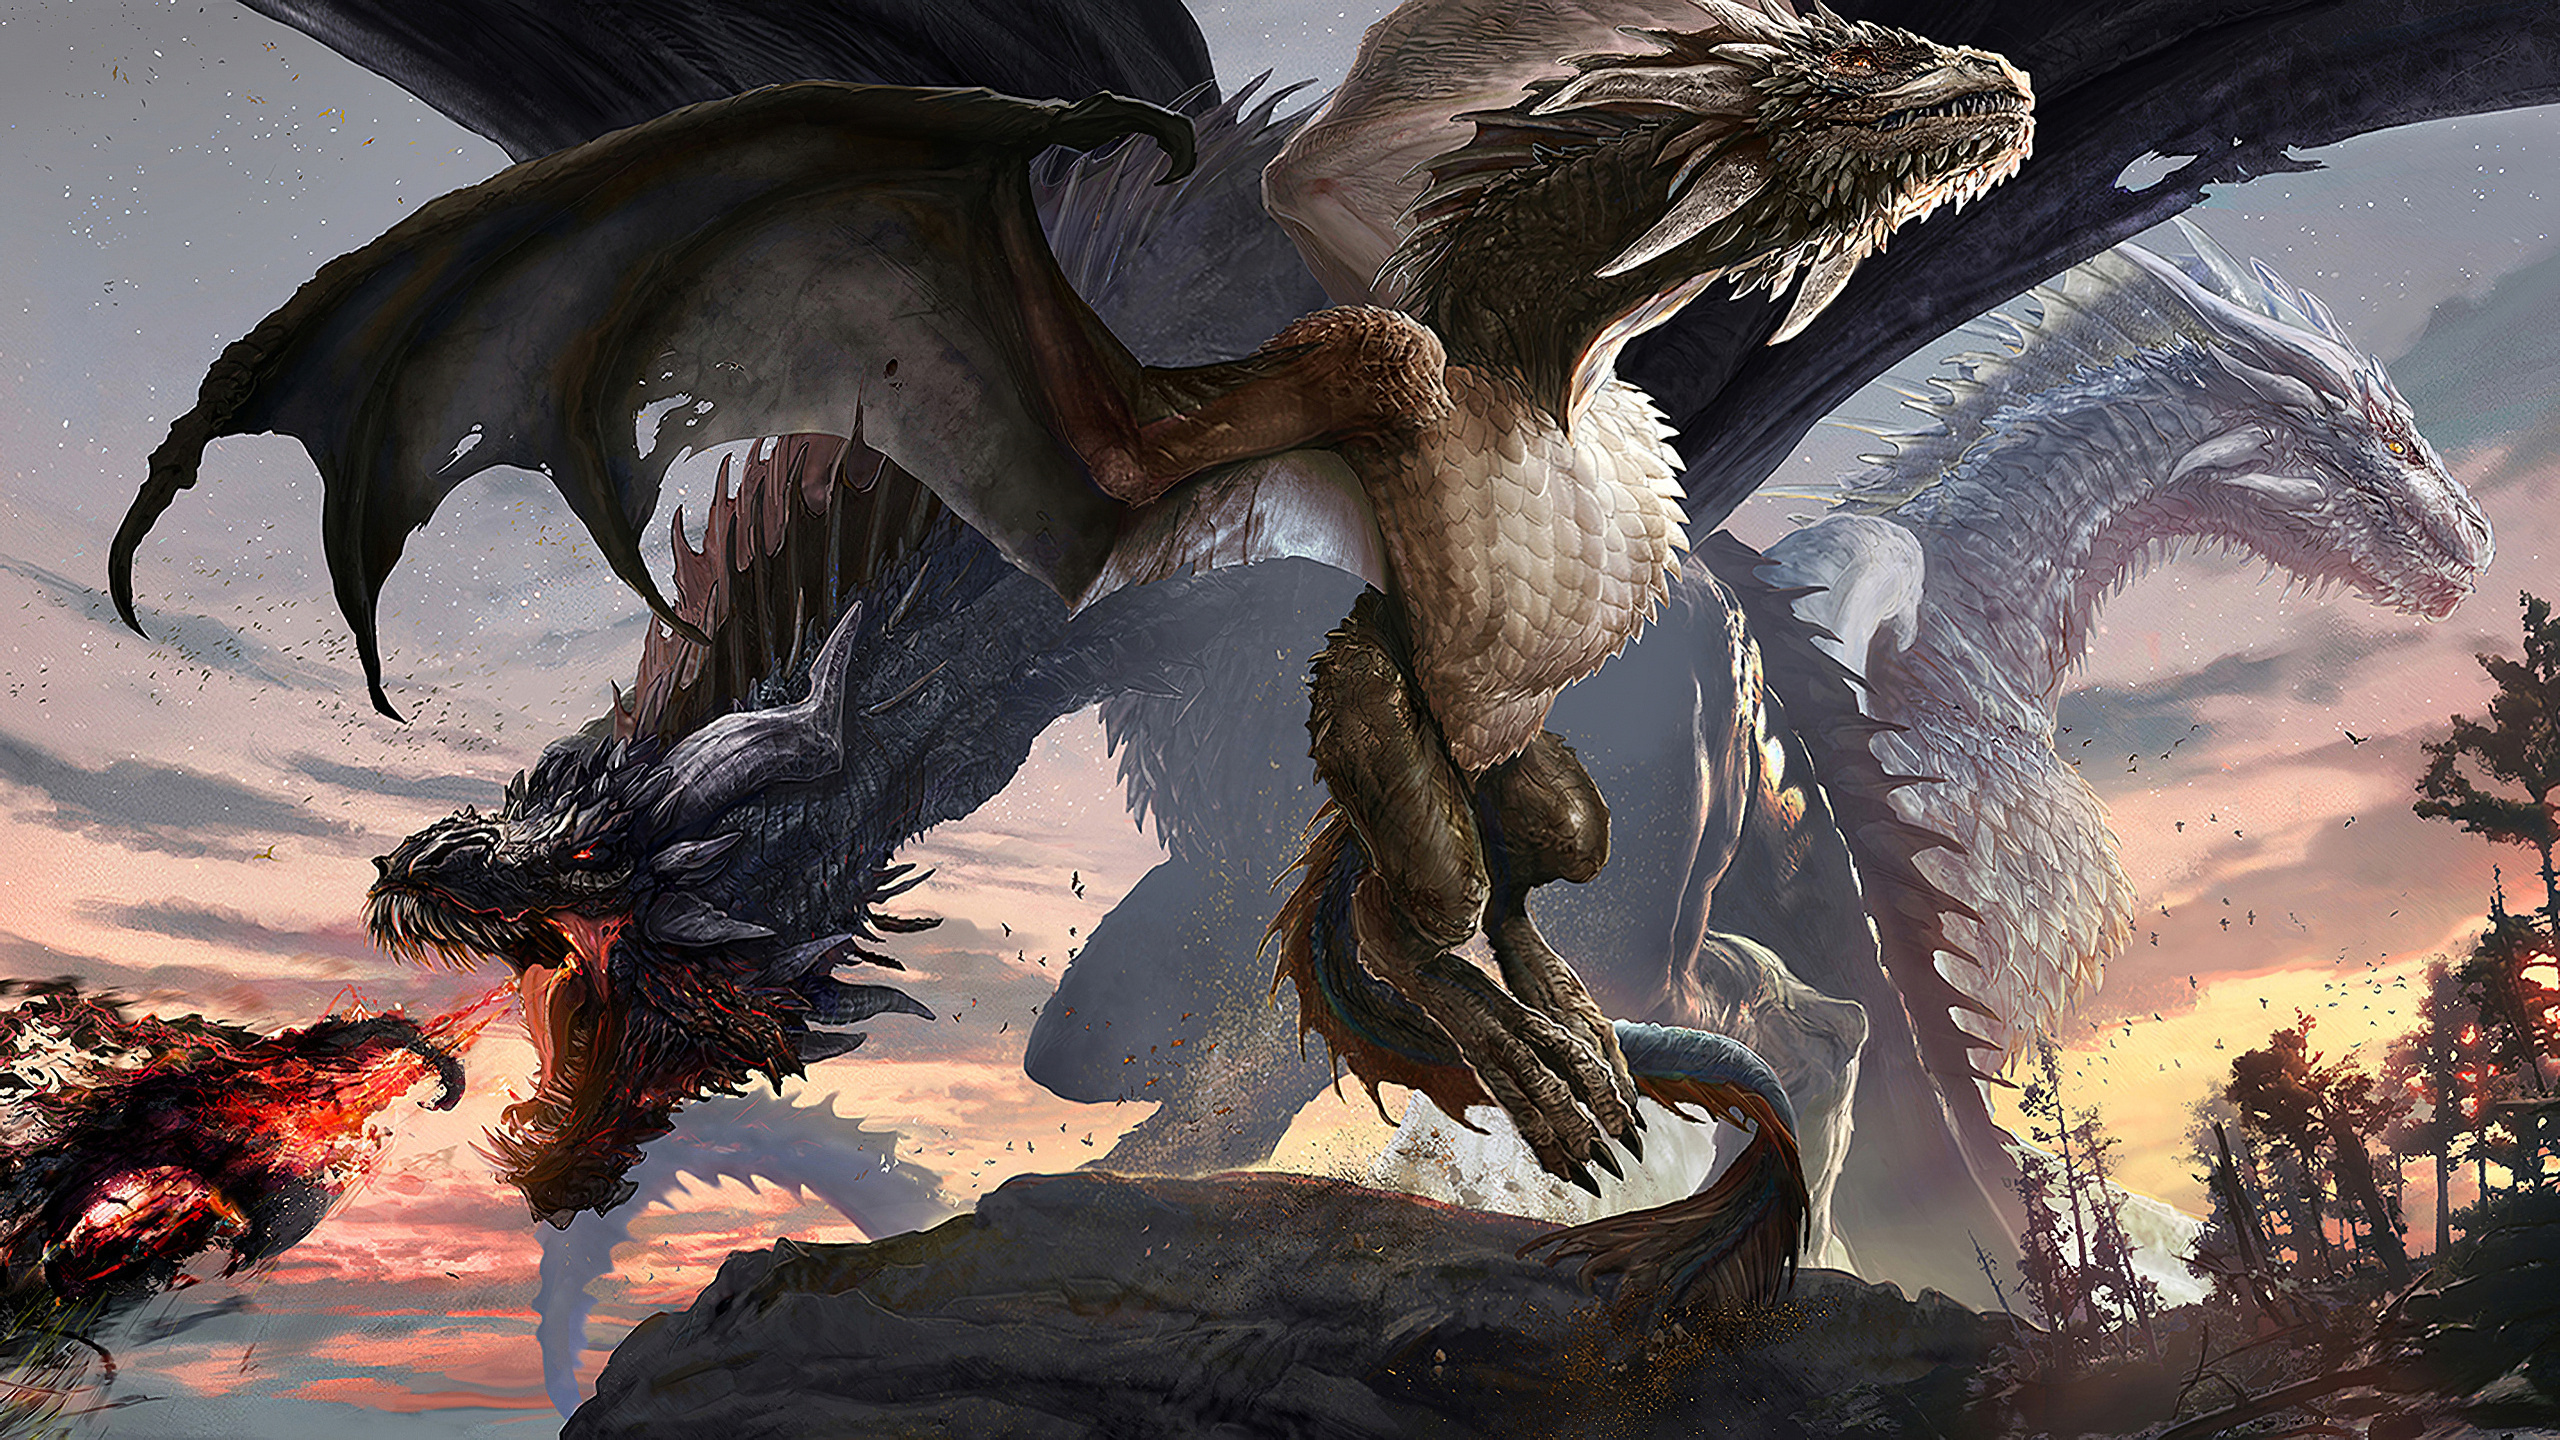 General 2560x1440 digital art fantasy art creature dragon artwork